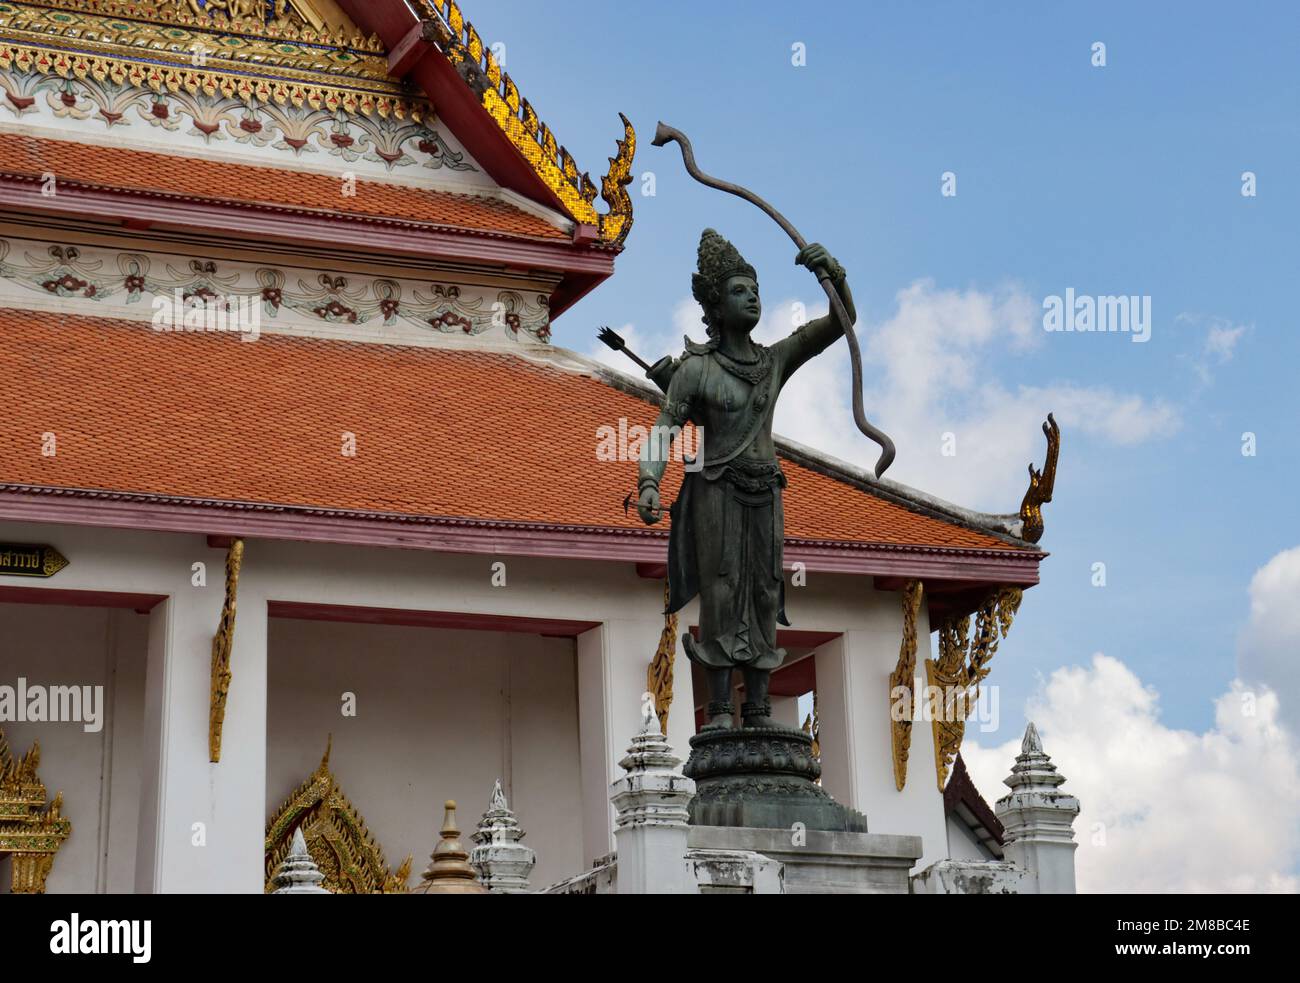 Rama Lifting the Bow sculpture, Bangkok National Museum, Thailand. Stock Photo